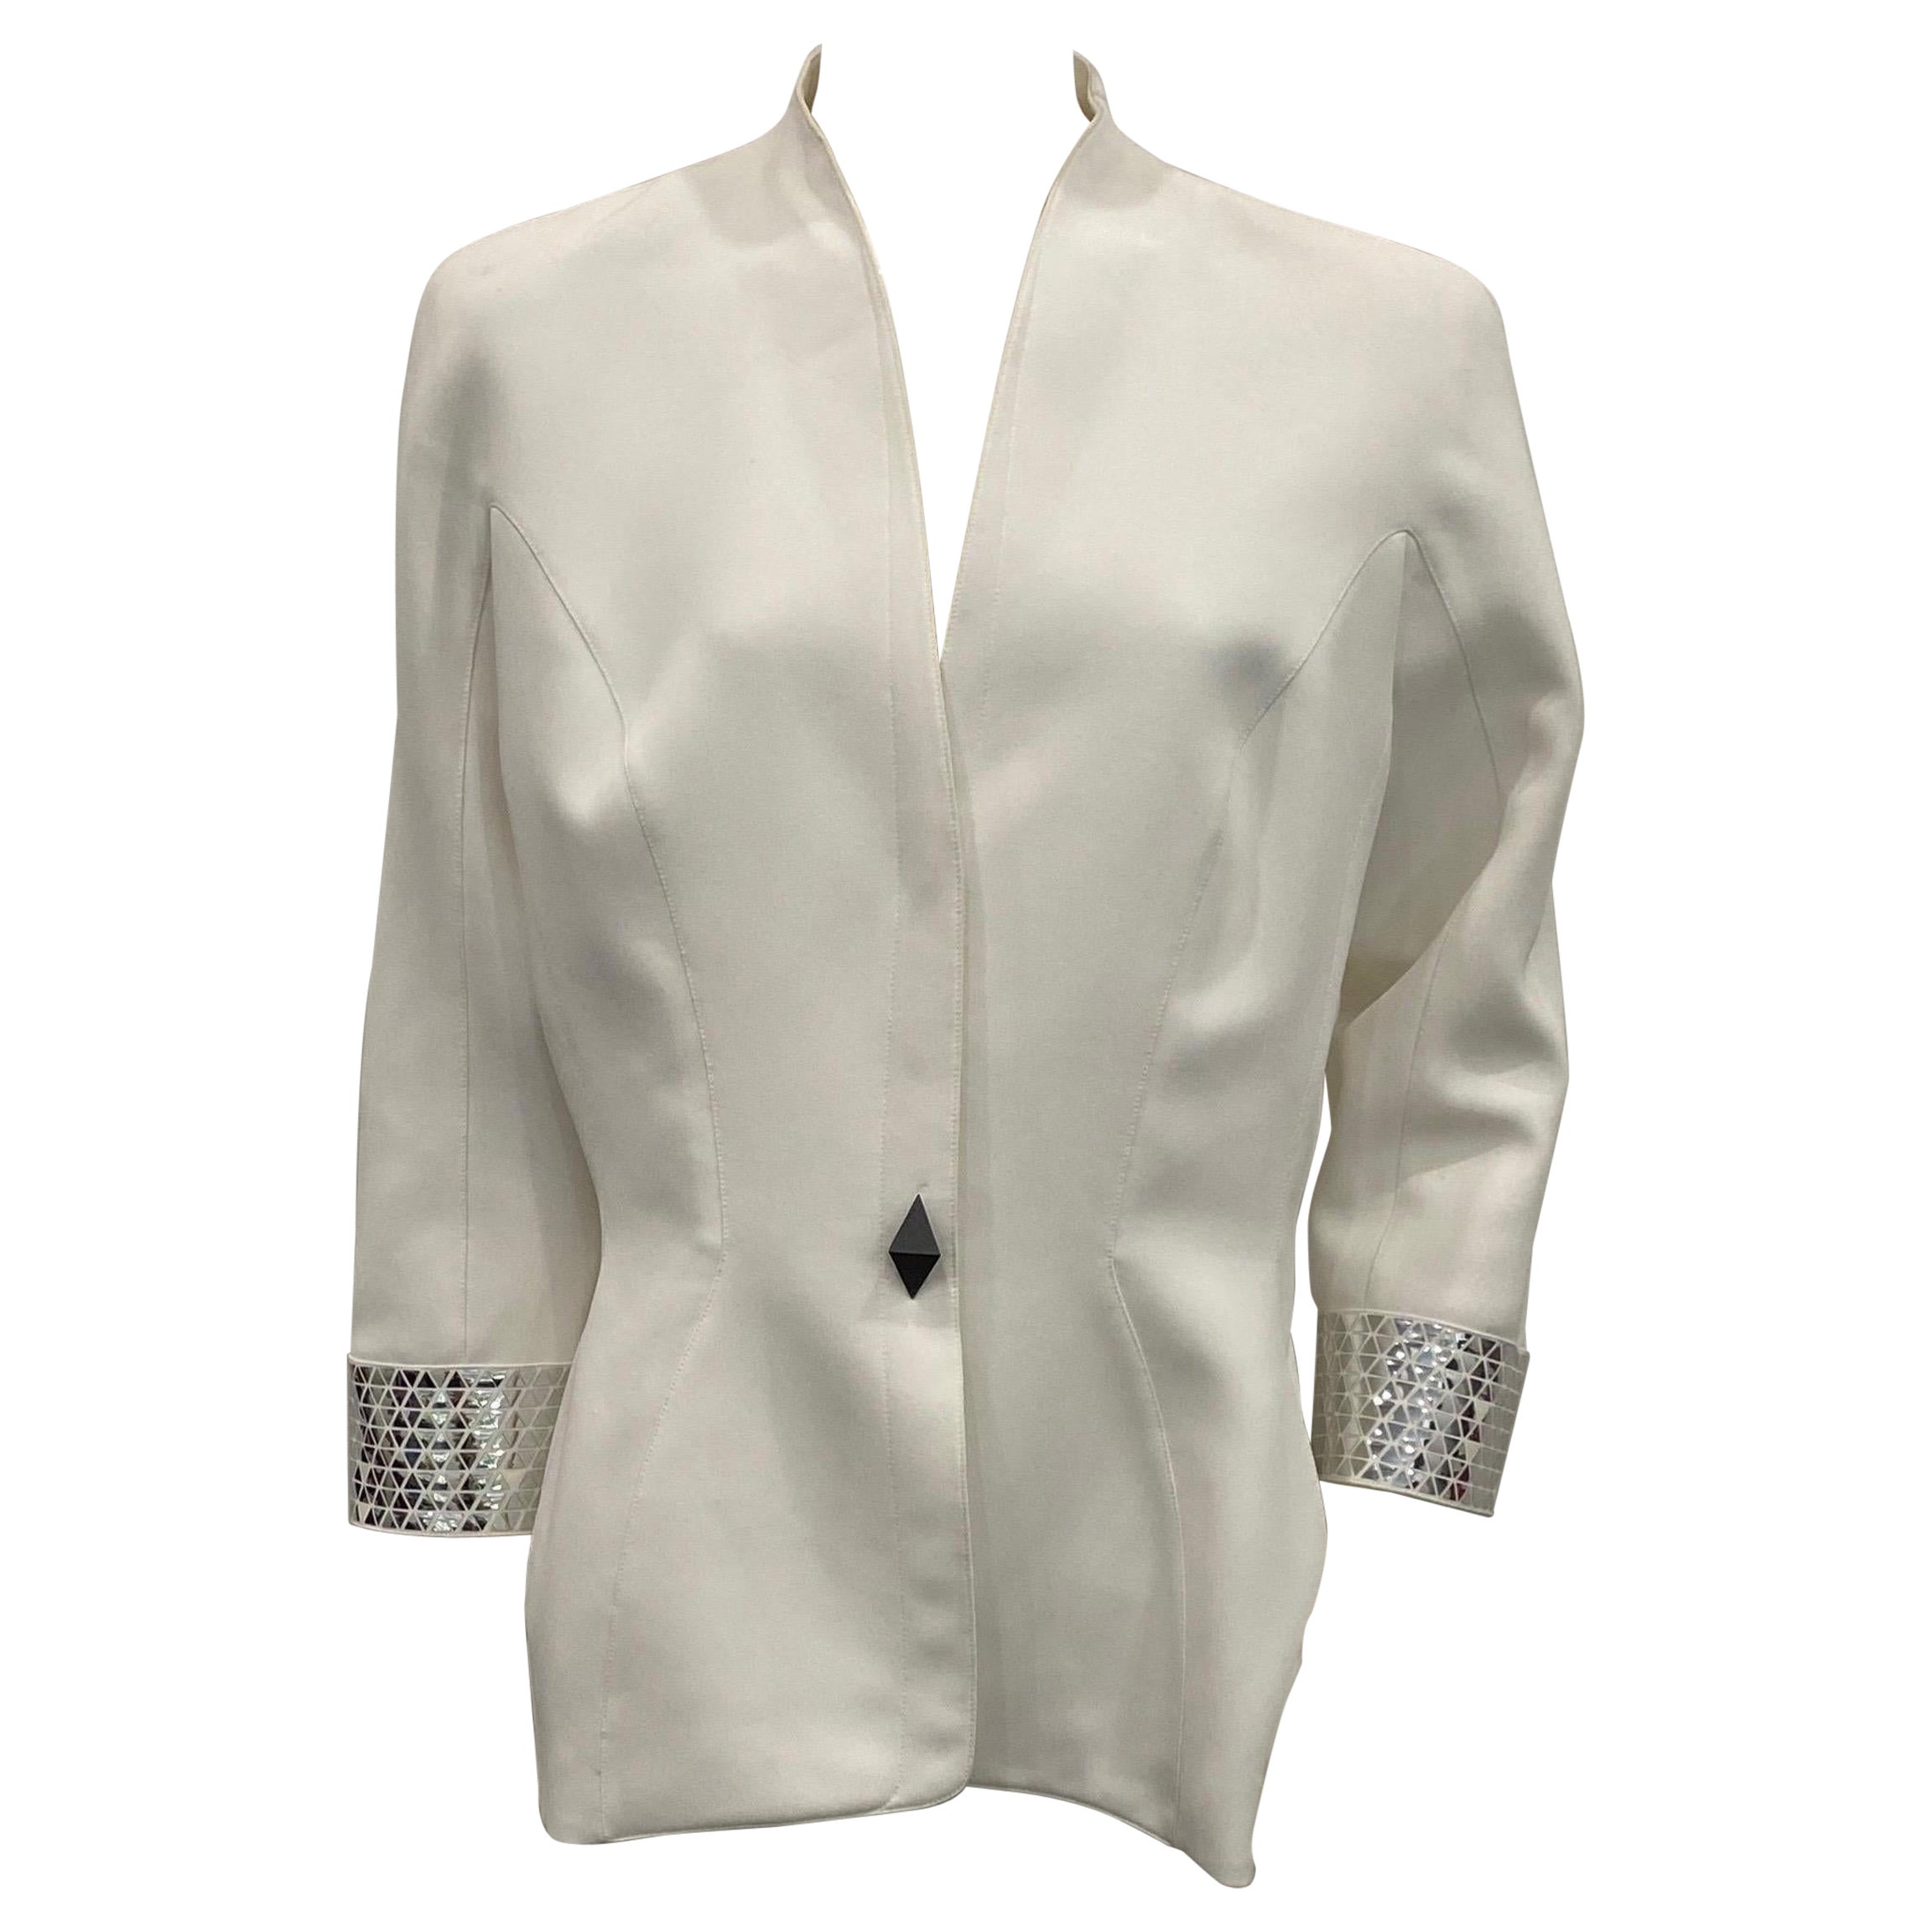 Thierry Mugler Couture 1990er Jahre Weiße Jacke mit silbernen Metalldetails - Größe 46